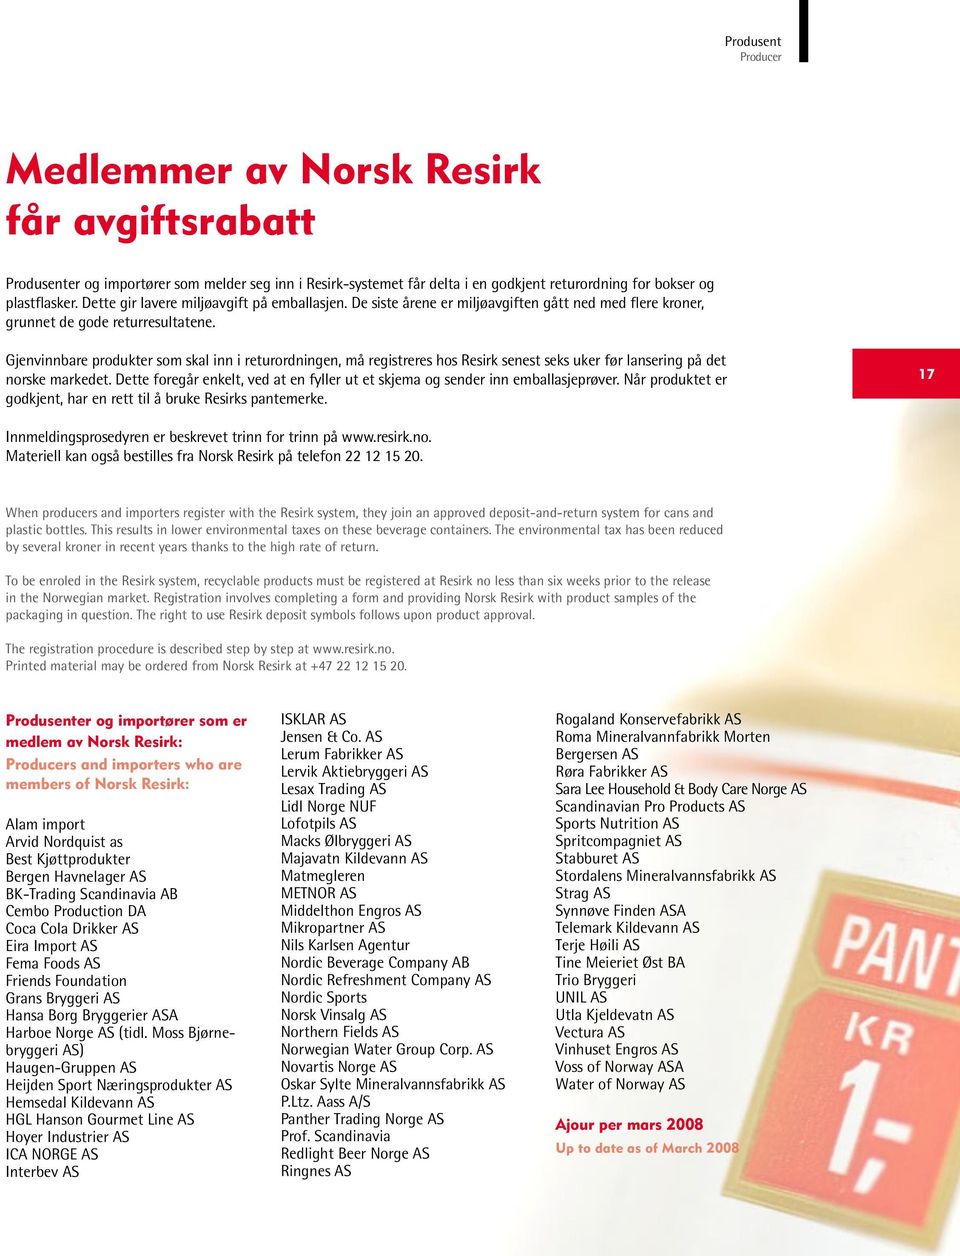 Gjenvinnbare produkter som skal inn i returordningen, må registreres hos Resirk senest seks uker før lansering på det norske markedet.